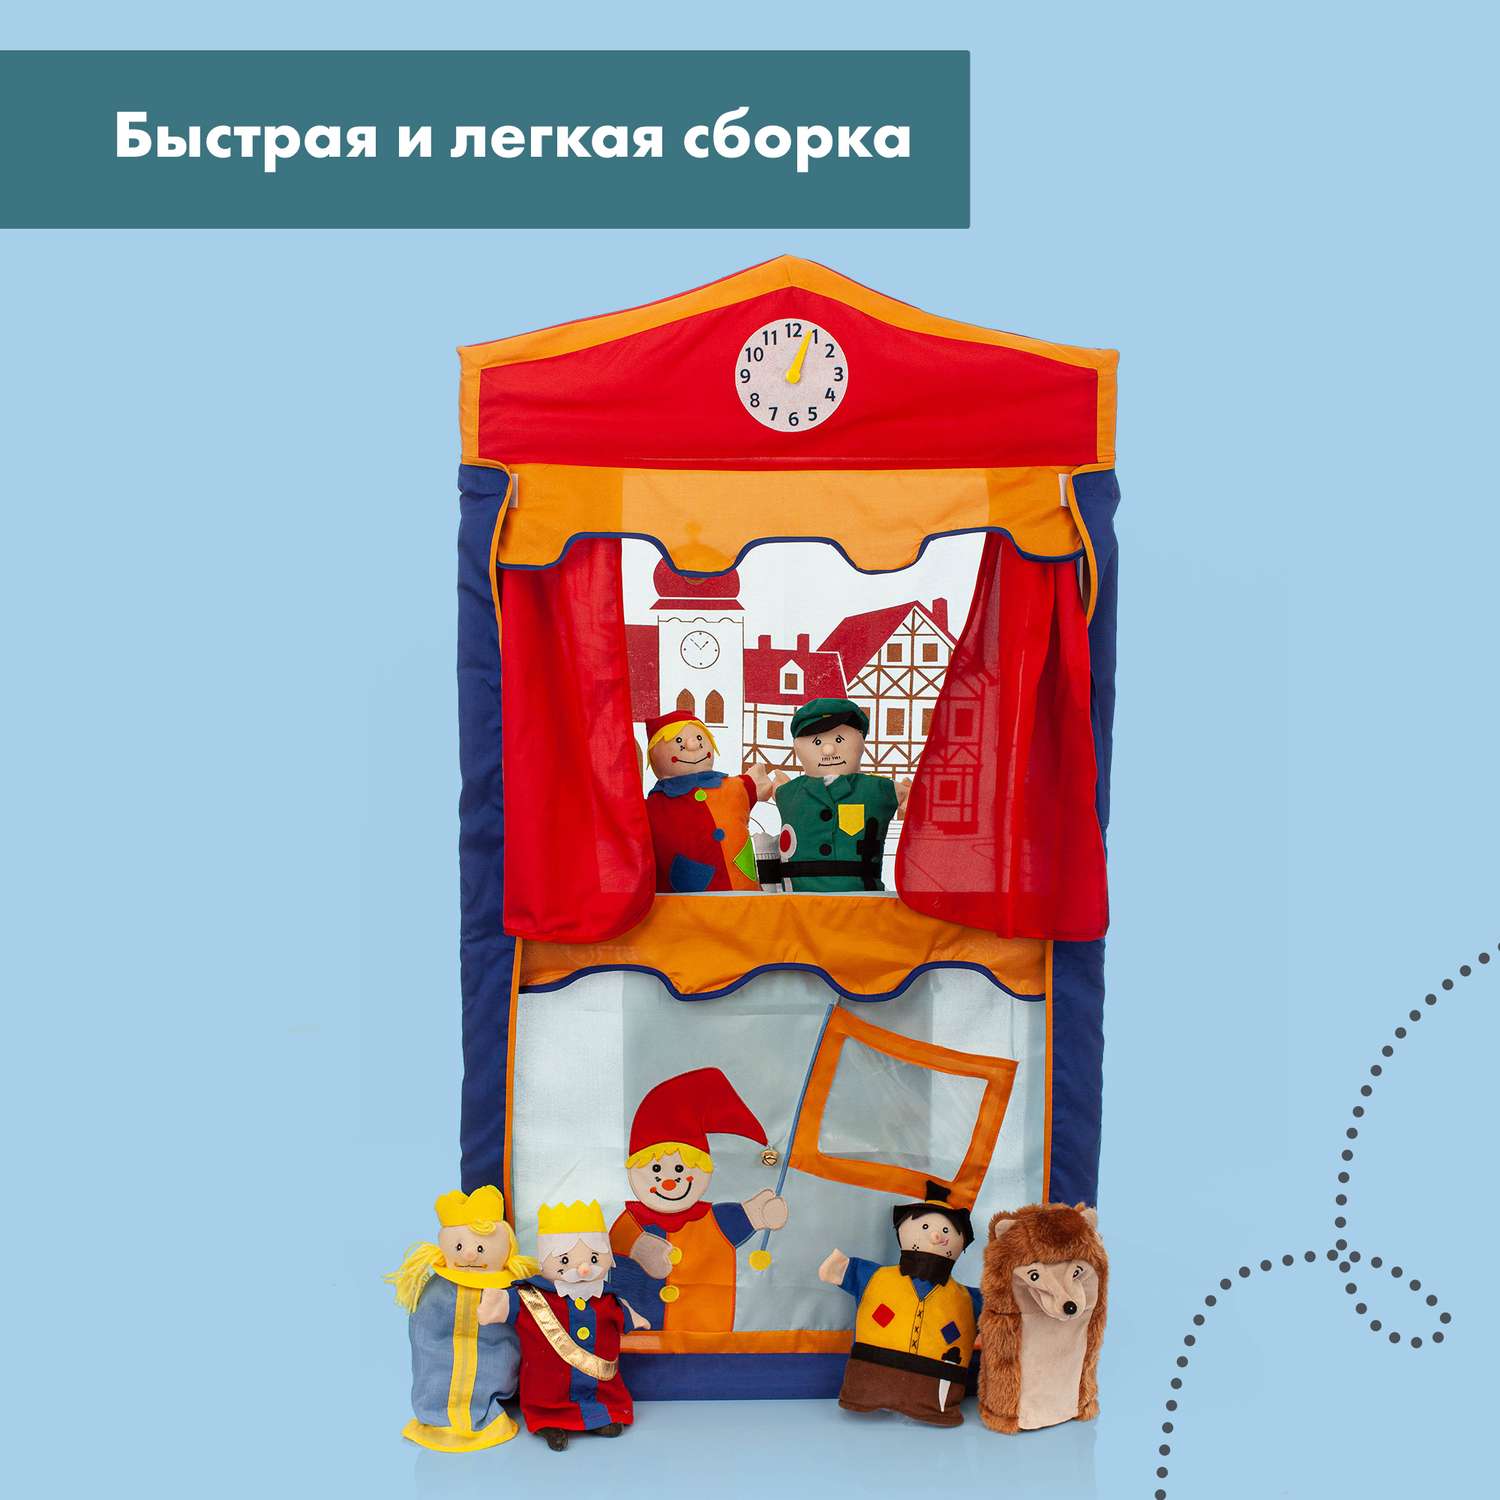 Кукольный театр Roba детский игровой с перчаточными куклами 6 шт в комплекте - фото 10